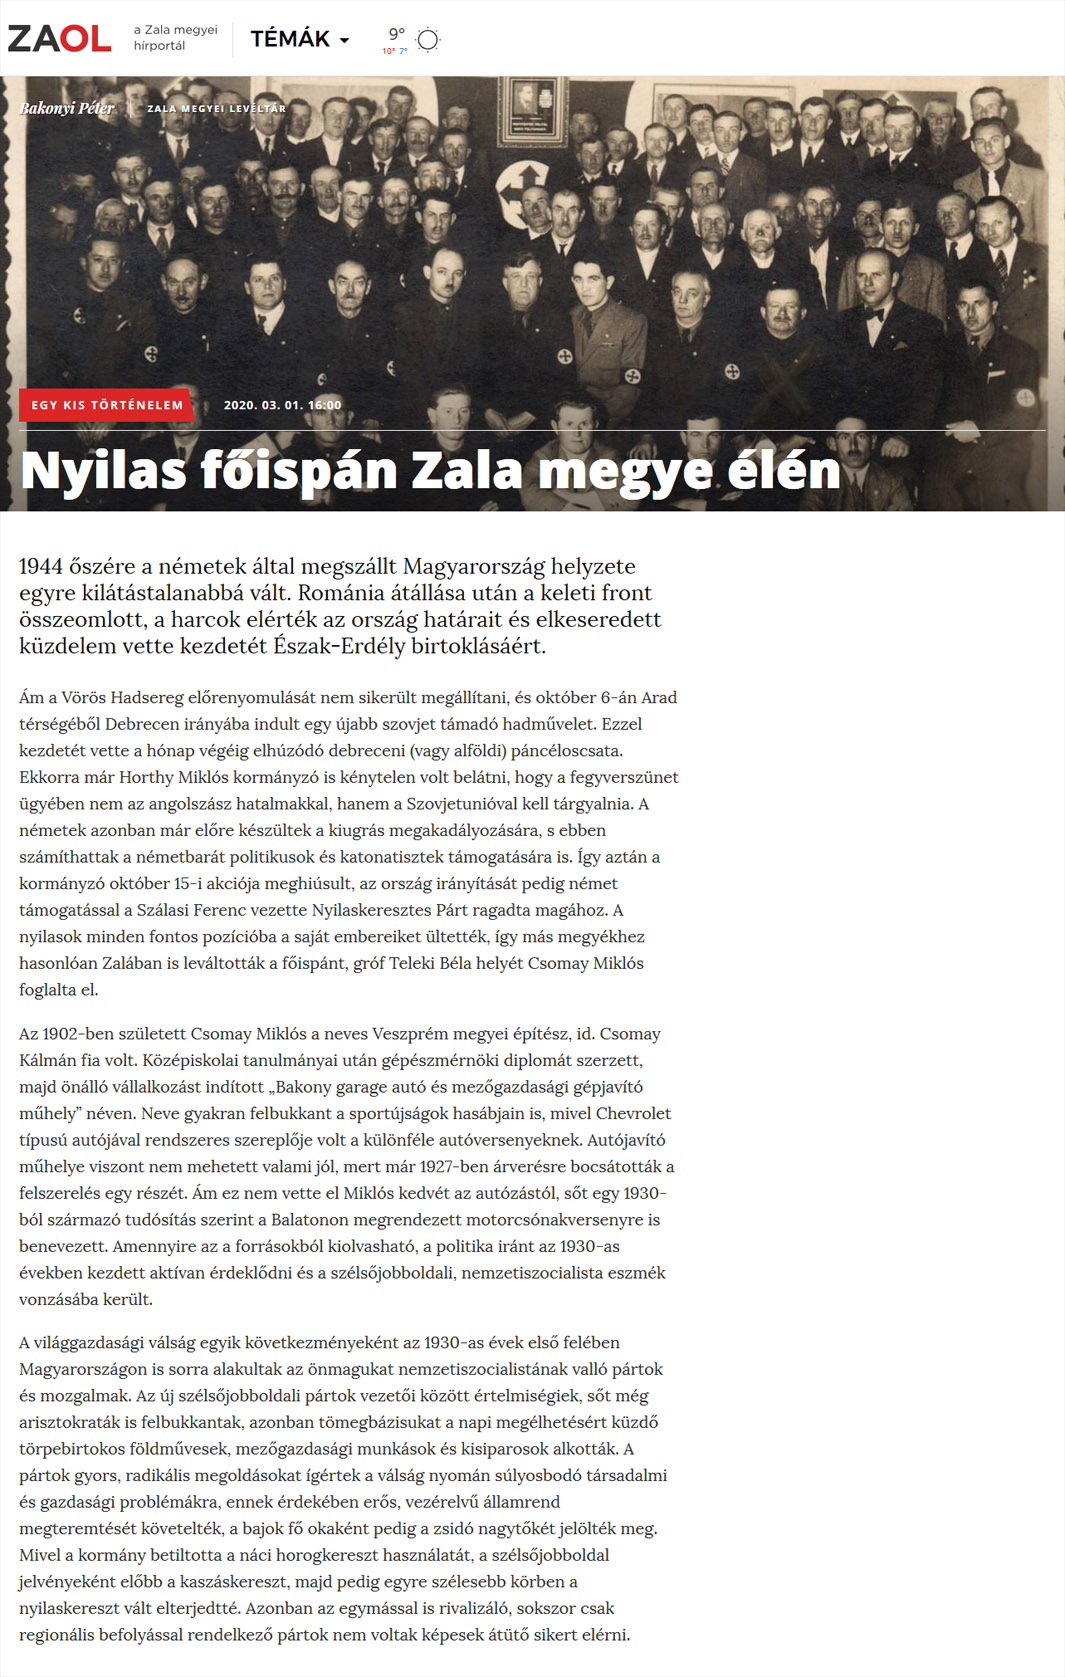 Nyilas főispán Zala megye élén Magyar Nemzeti Levéltár